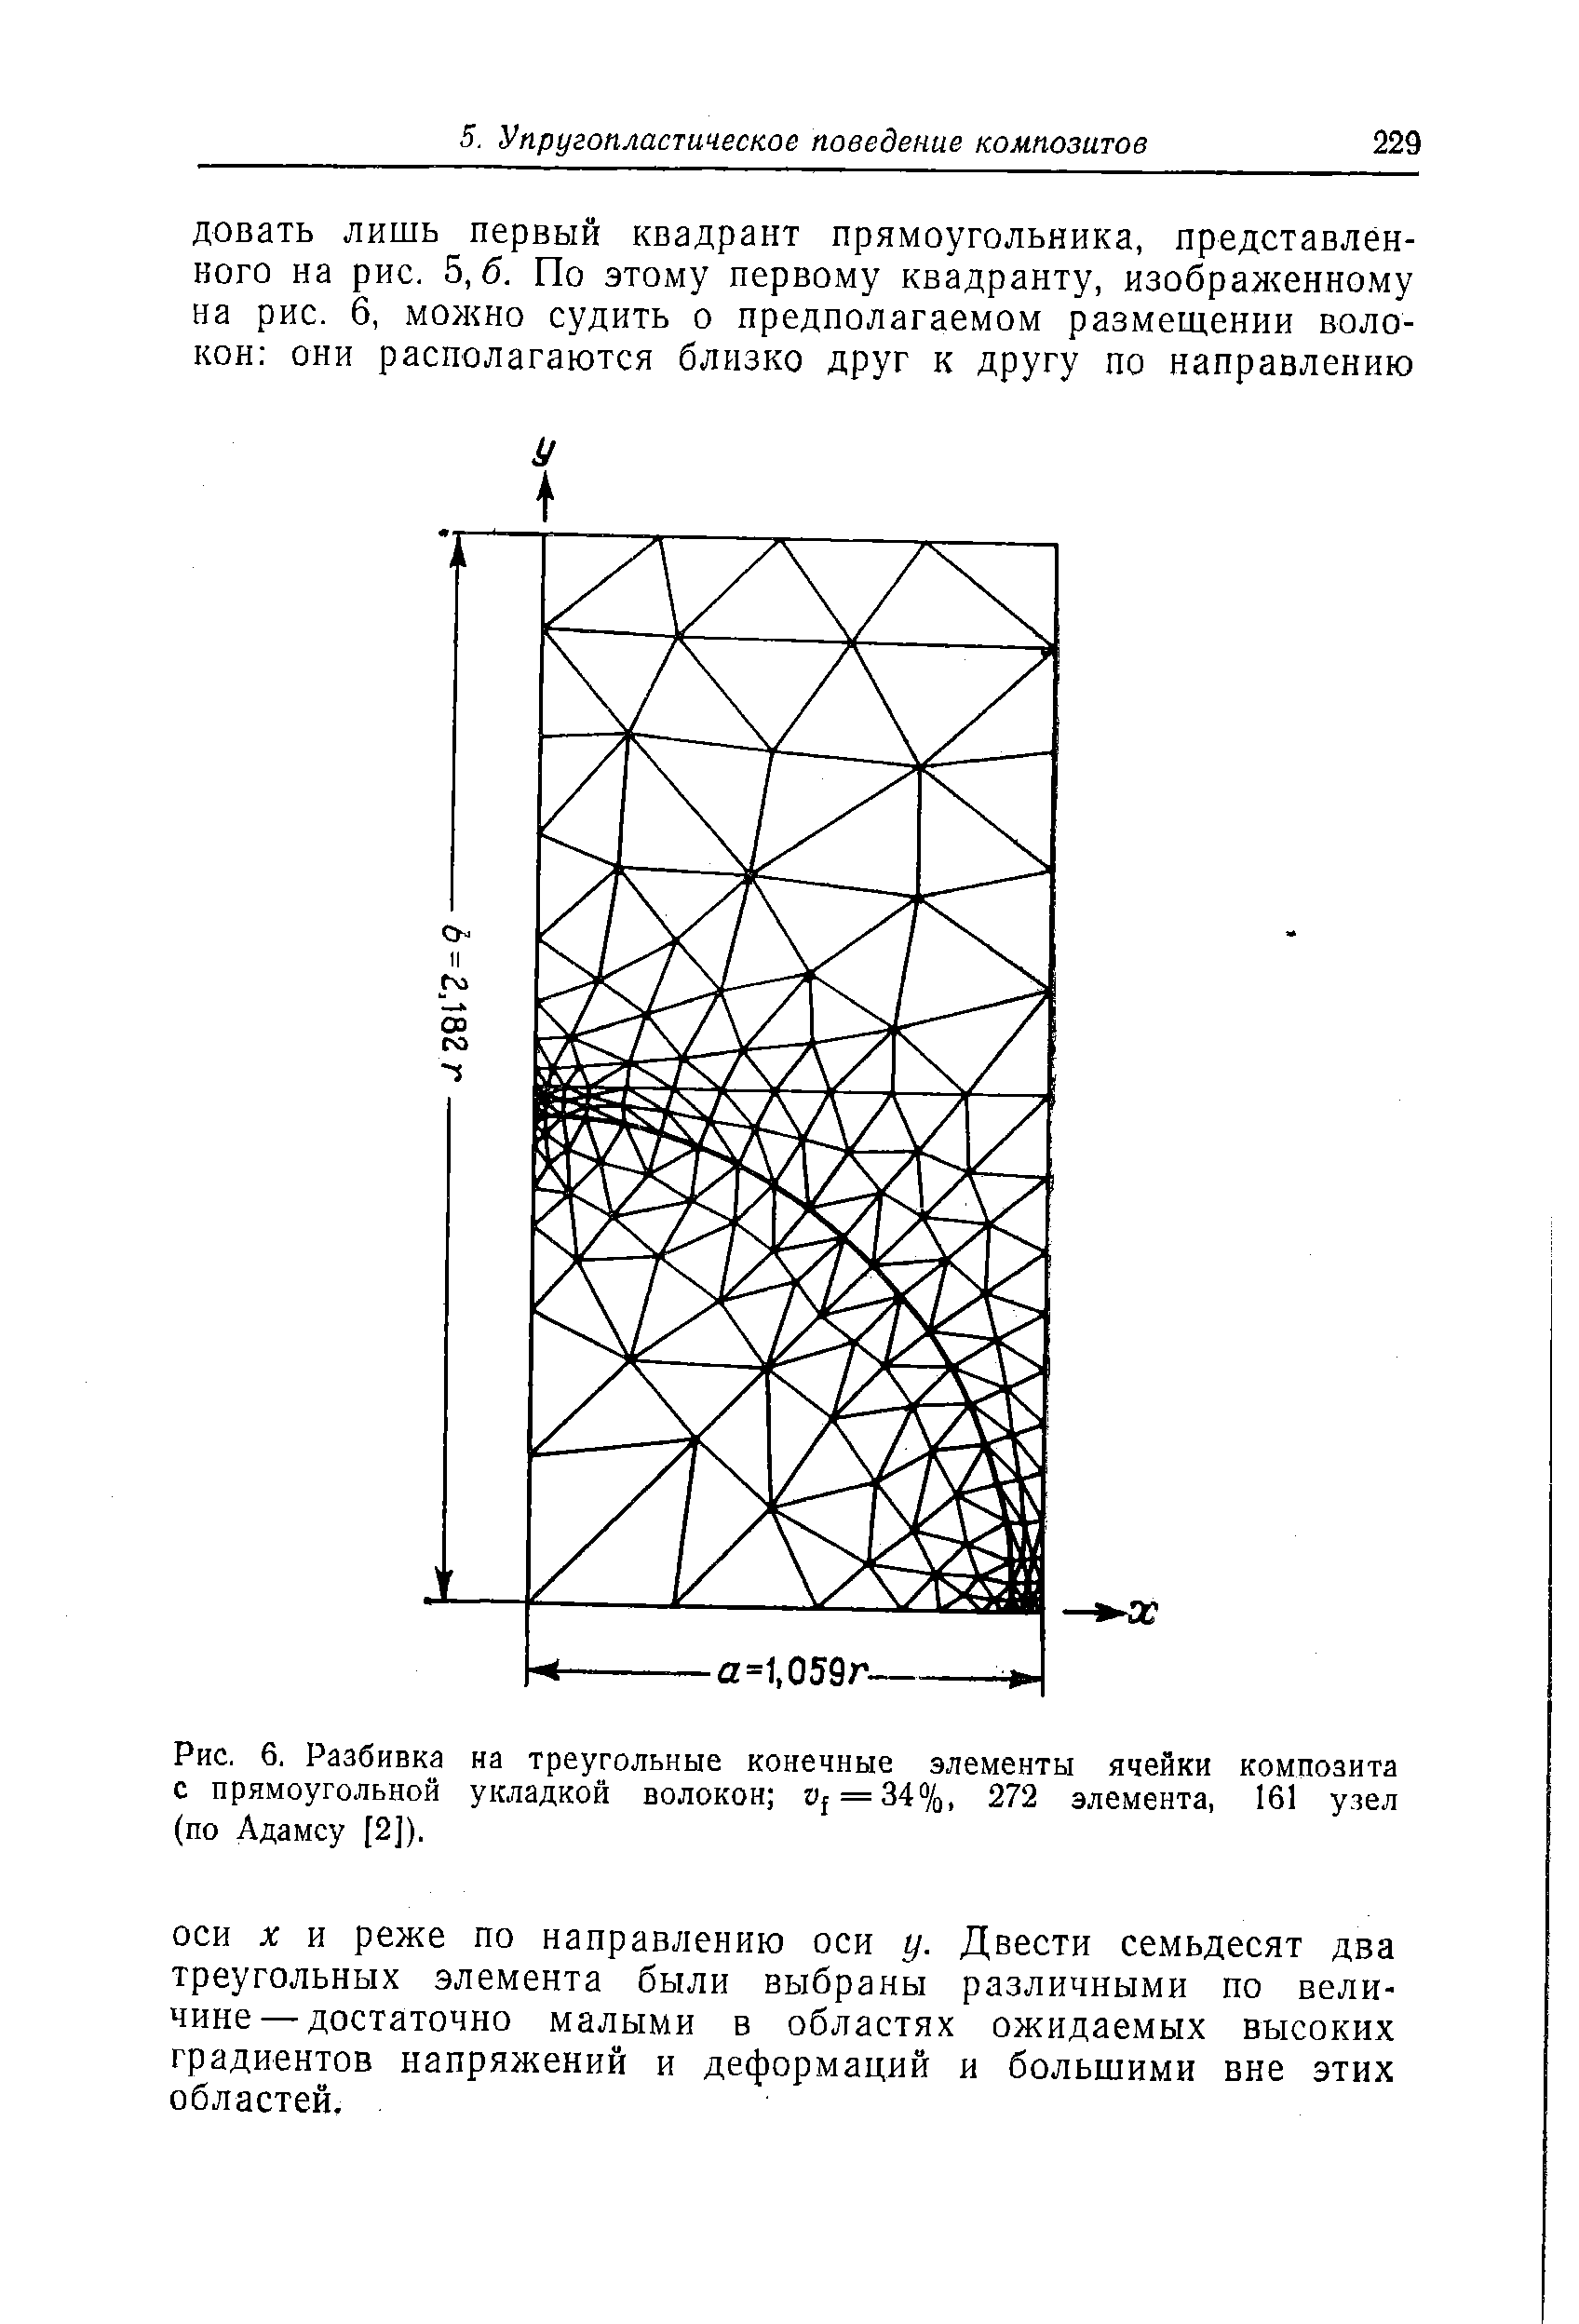 Рис. 6. Разбивка на треугольные конечные элементы ячейки композита с прямоугольной укладкой волокон г) = 34%, 272 элемента, 161 узел (по Адамсу [2]).
